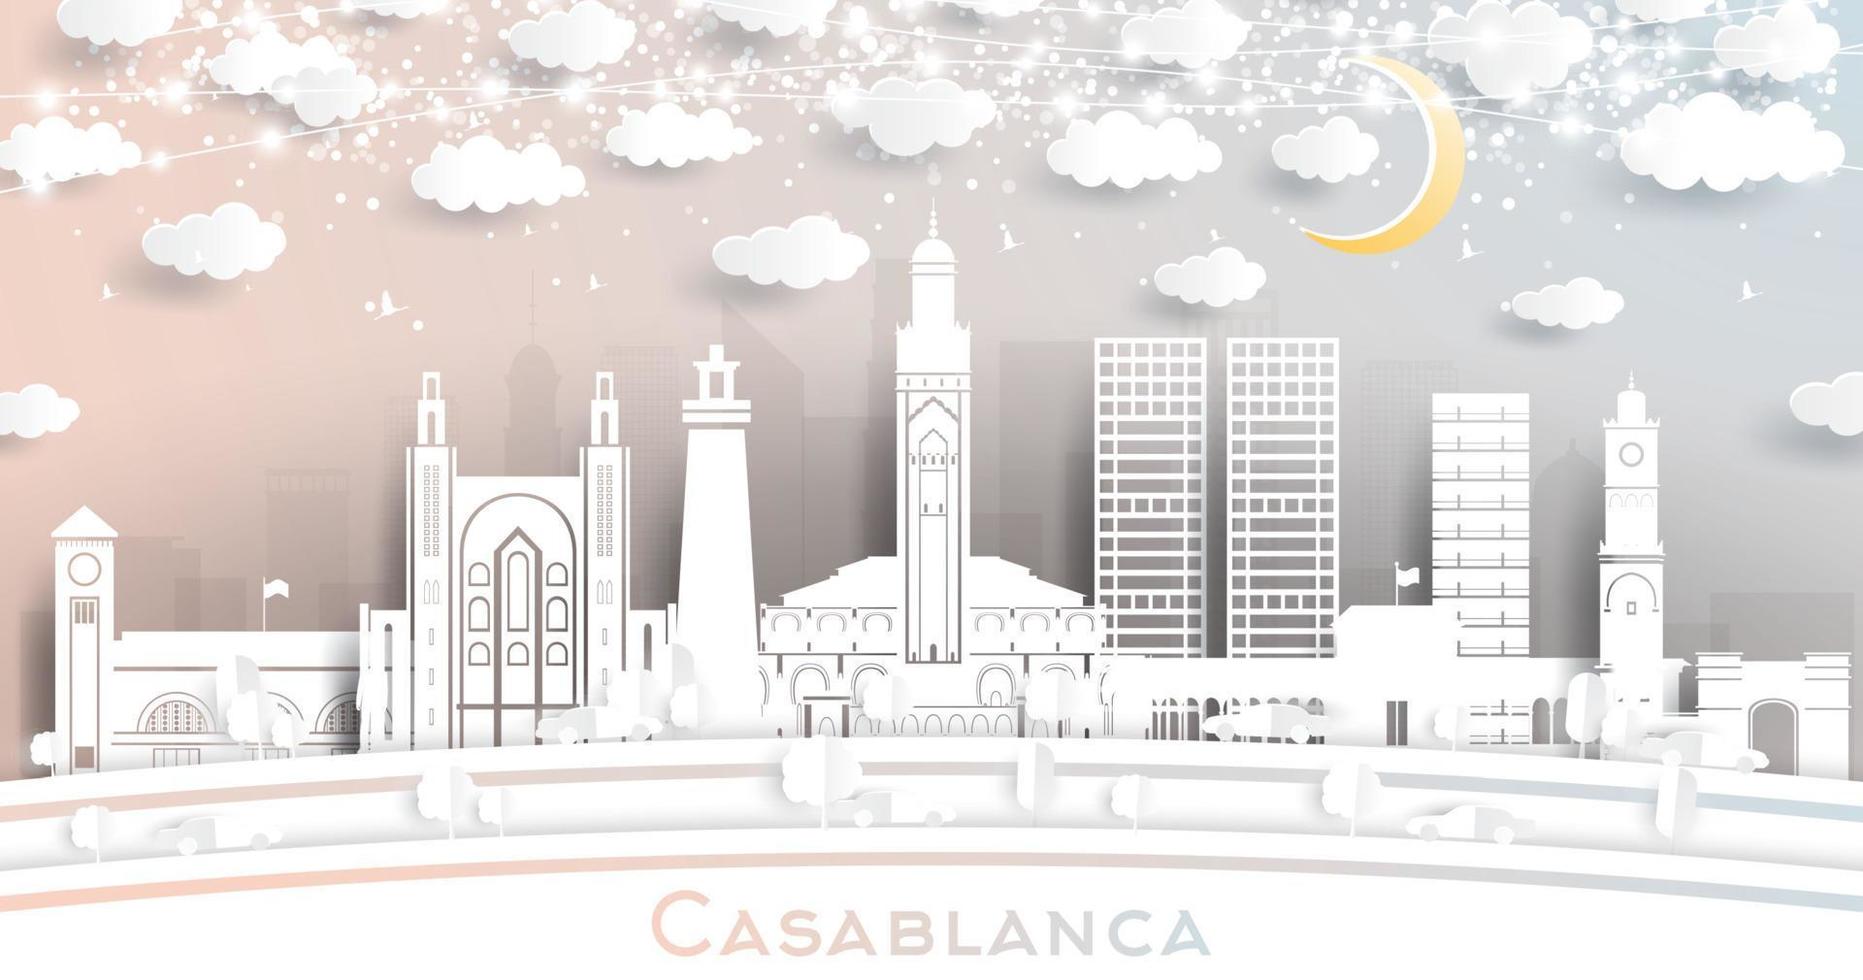 Casablanca Marokko stad horizon in papier besnoeiing stijl met wit gebouwen, maan en neon guirlande. vector